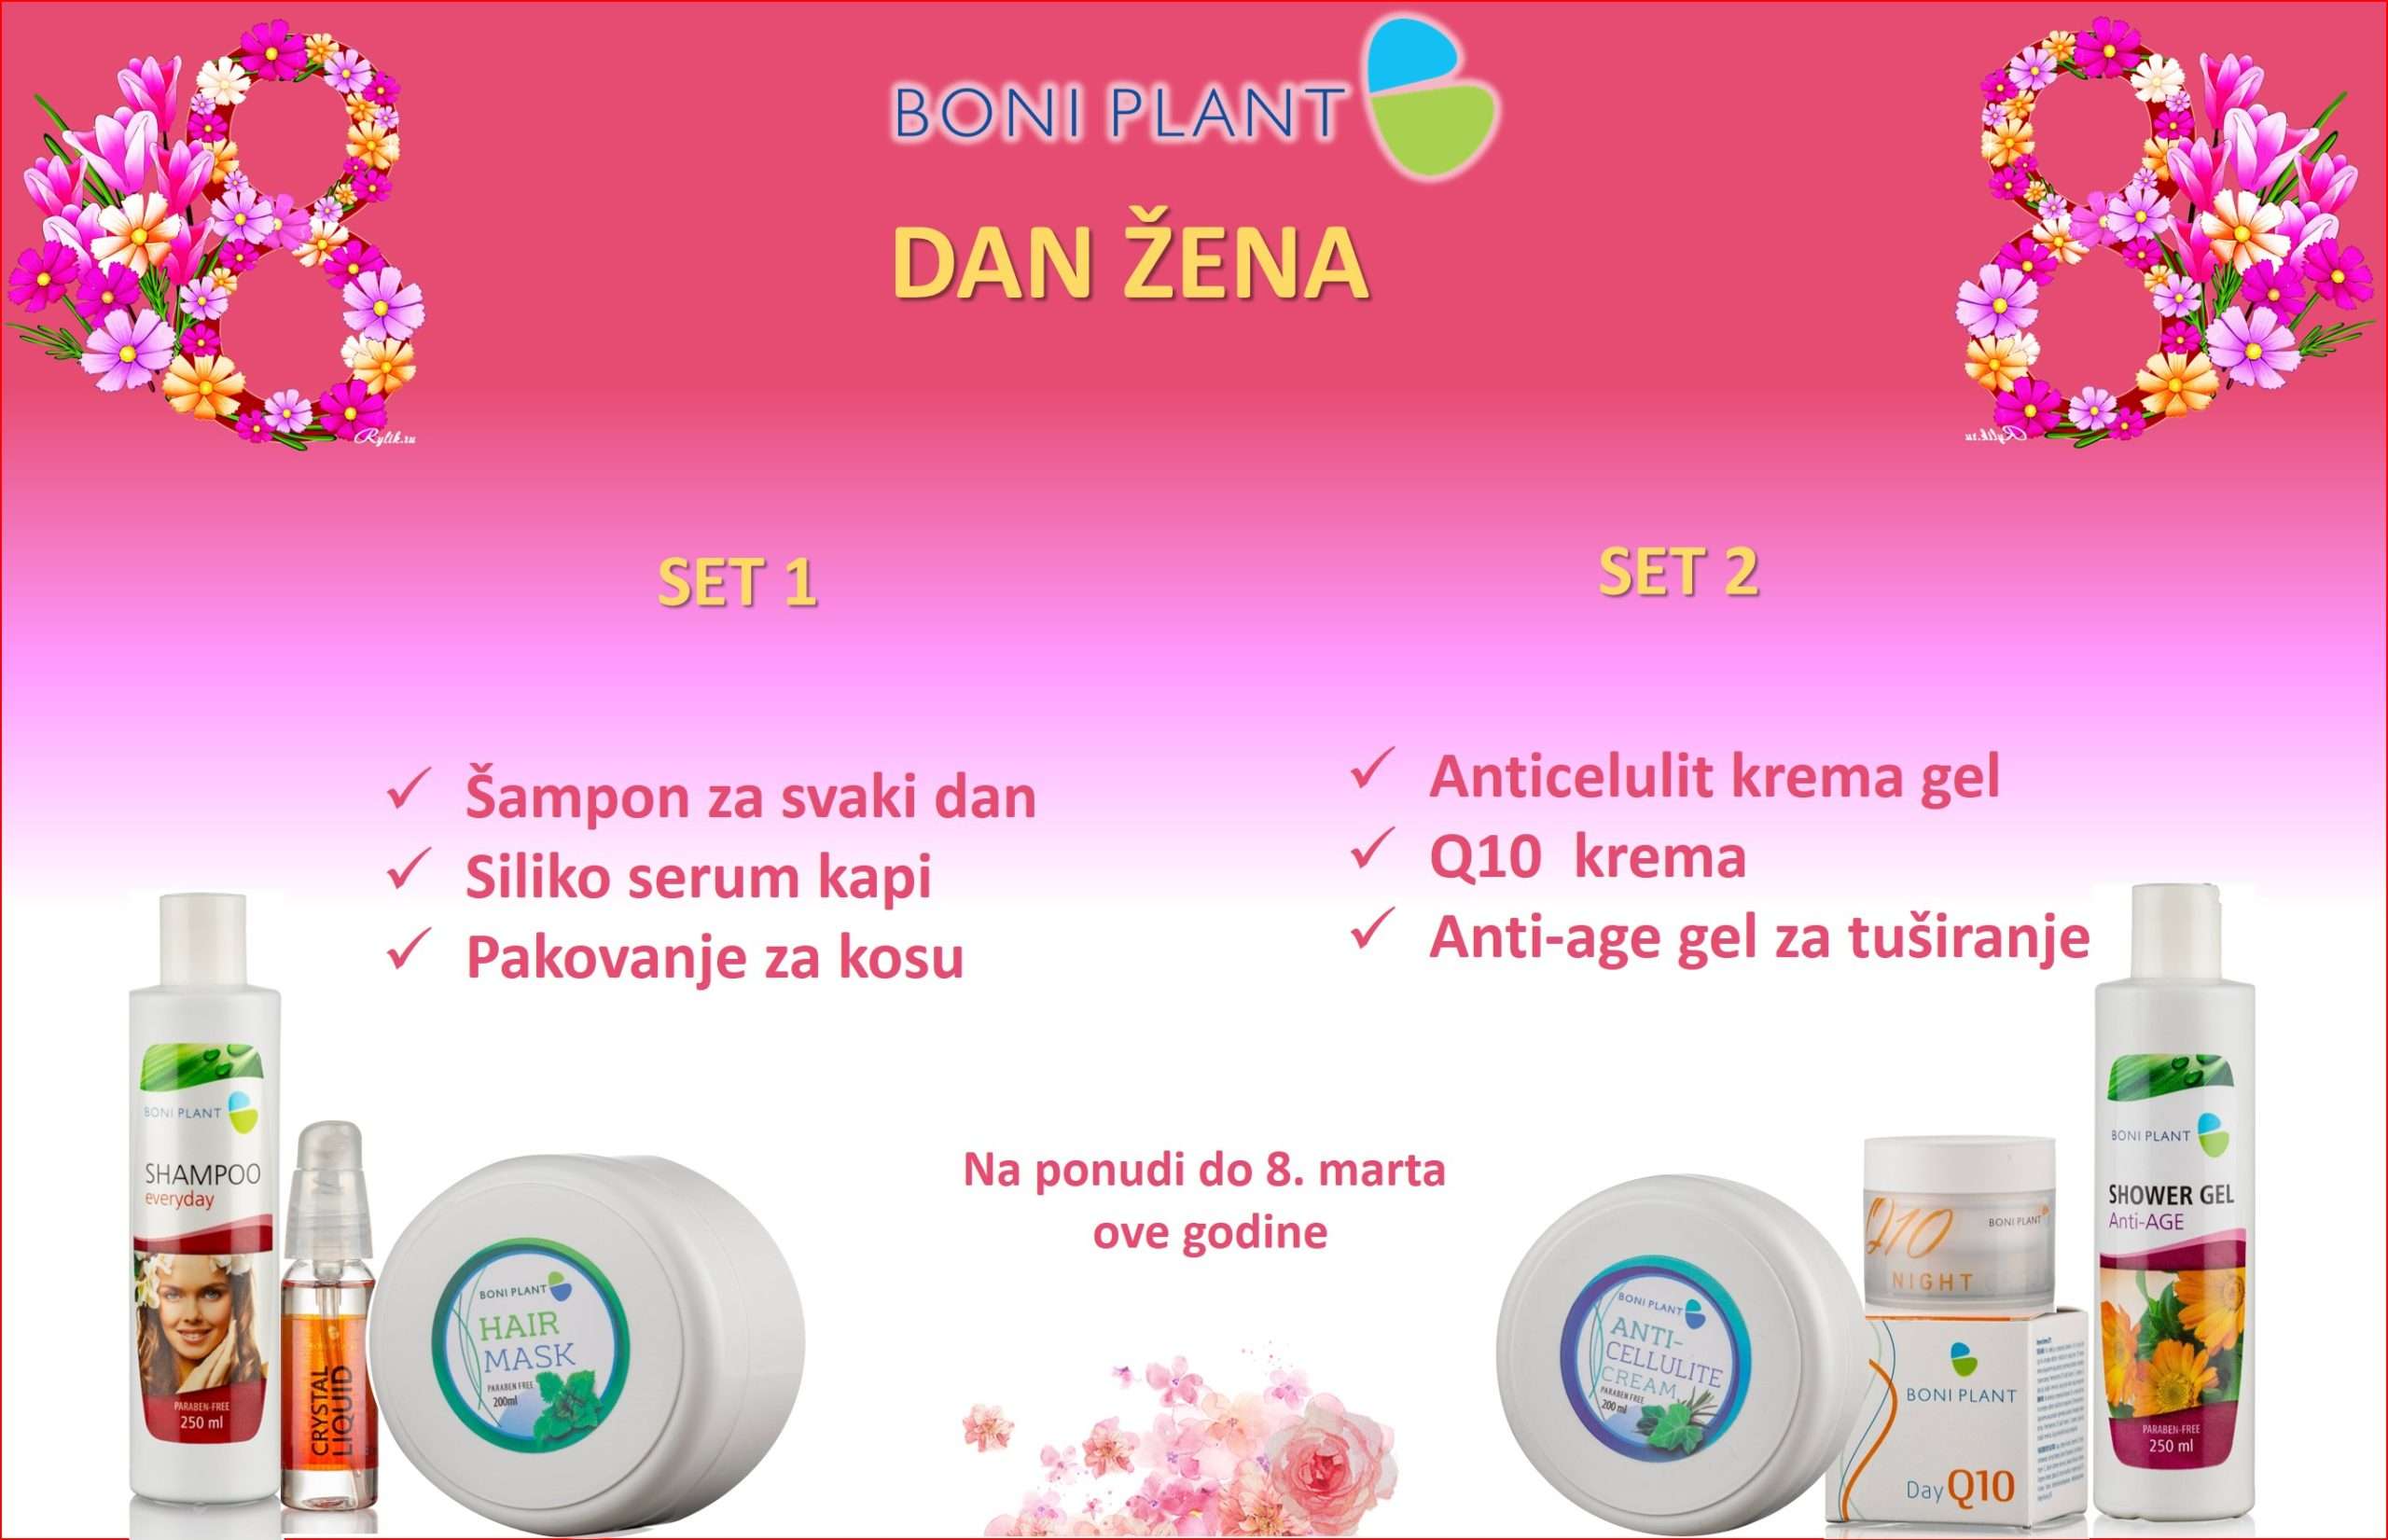 danzena-8.mart-akcija-boniplant-prirodniproizvodi-sajt